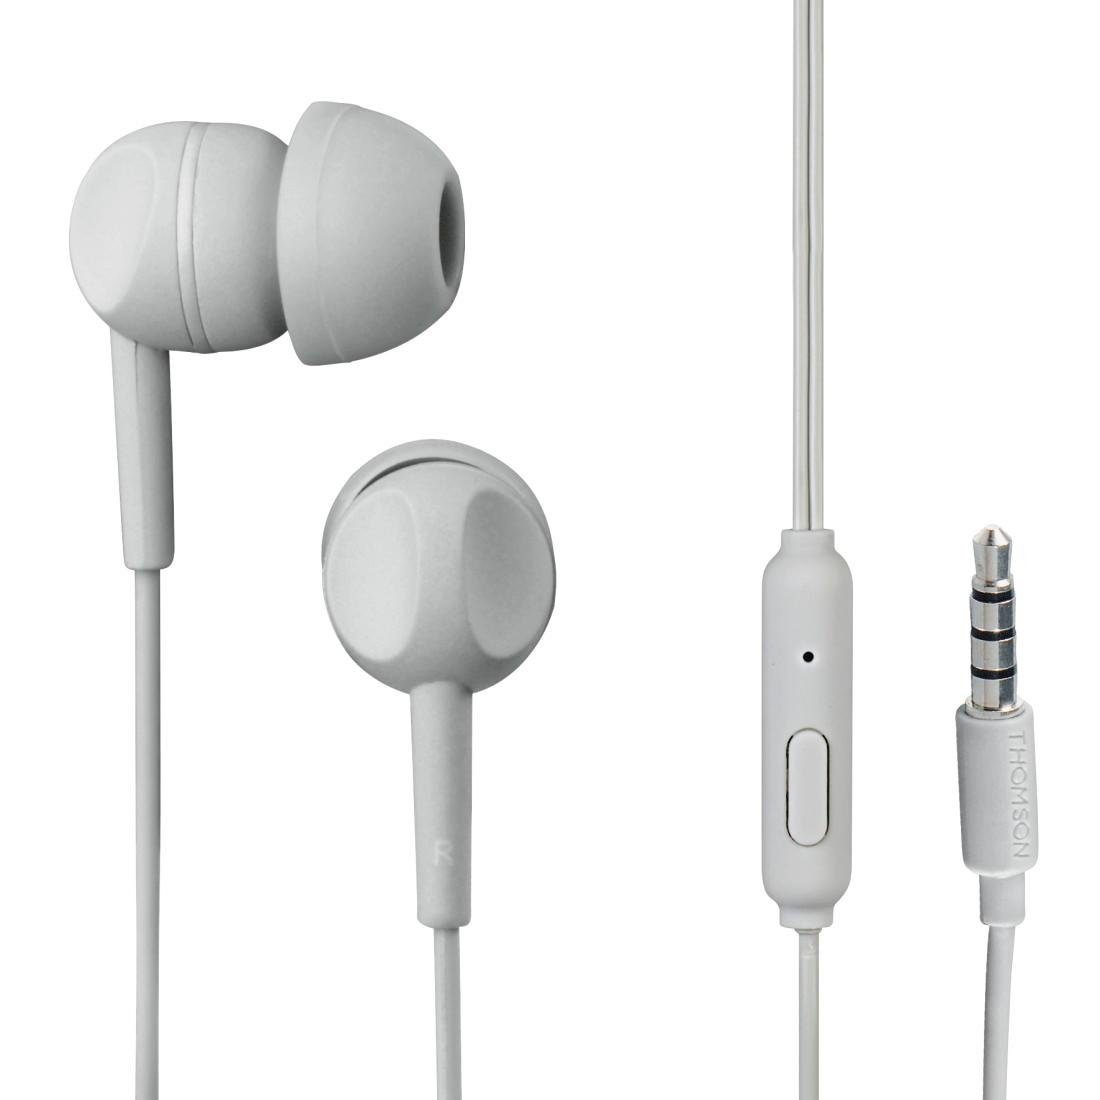 Mikrofon, Headset, In-Ear-Kopfhörer mit Thomson Kabel (Geräuschisolierung, und Rufannahmetaste) Ear In Geräuschunterdrückung, Telefonfunktion, Grau Kopfhörer